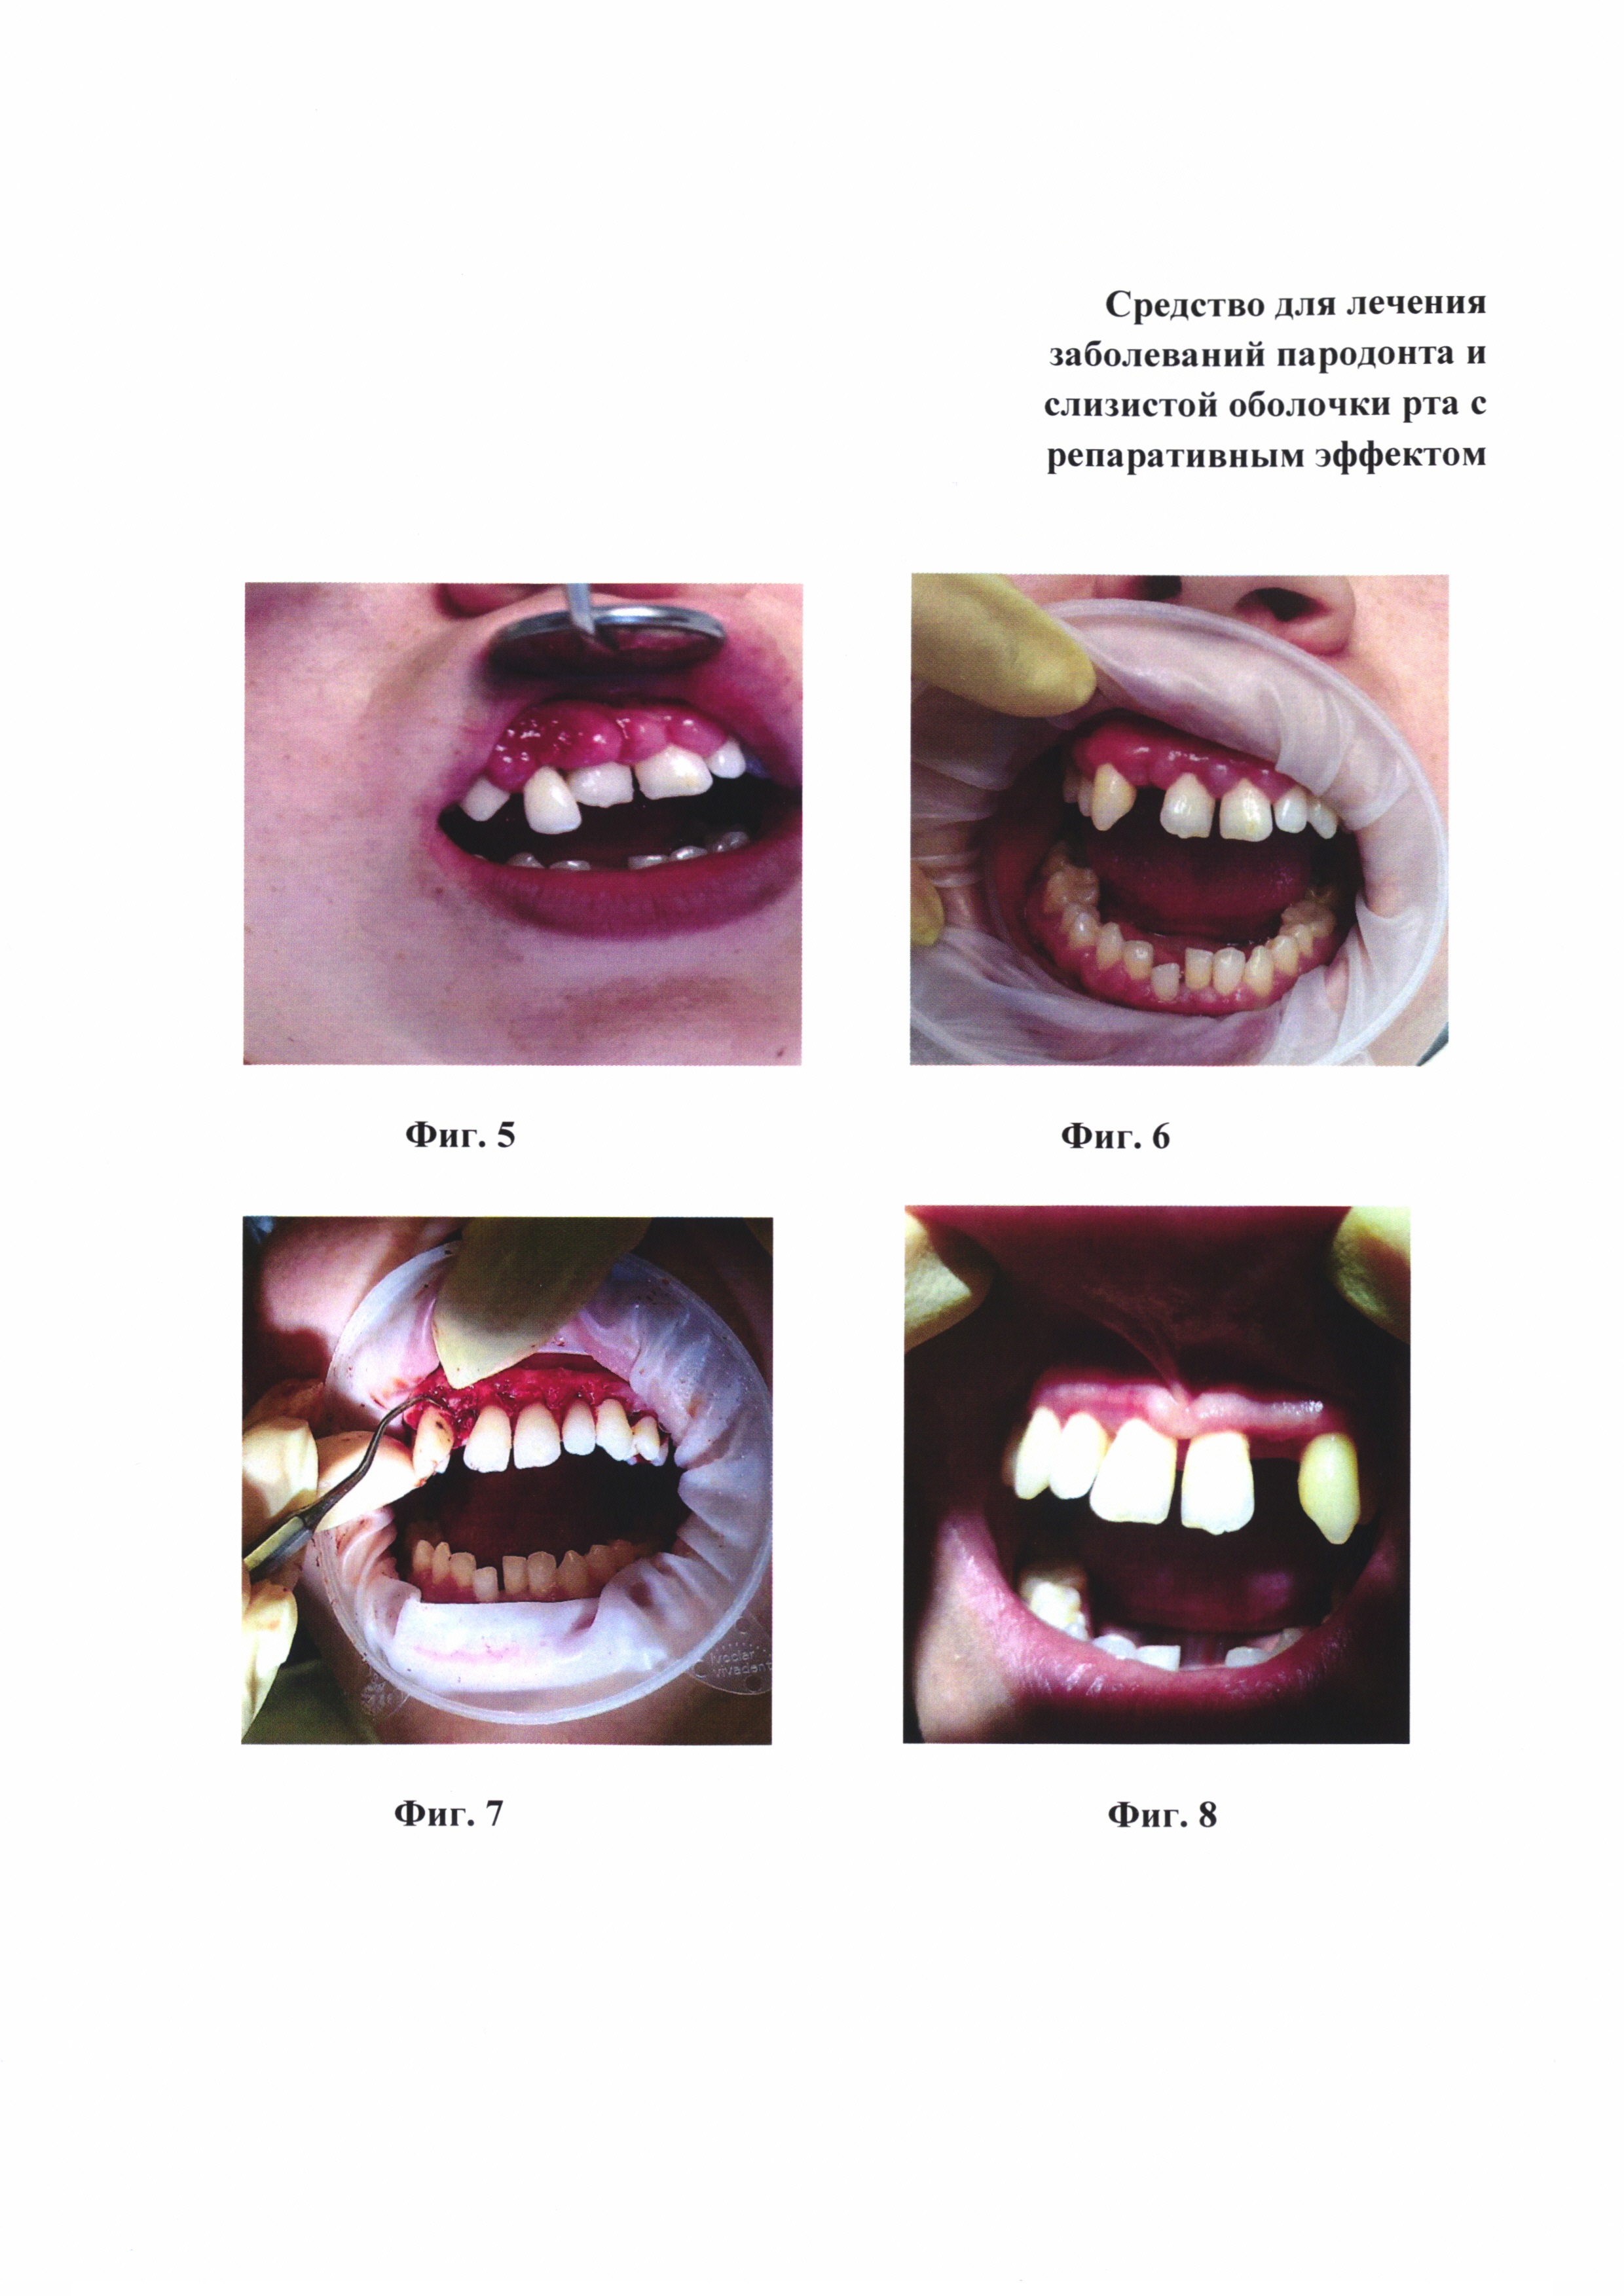 Средство для лечения заболеваний пародонта и слизистой оболочки рта с репаративным эффектом